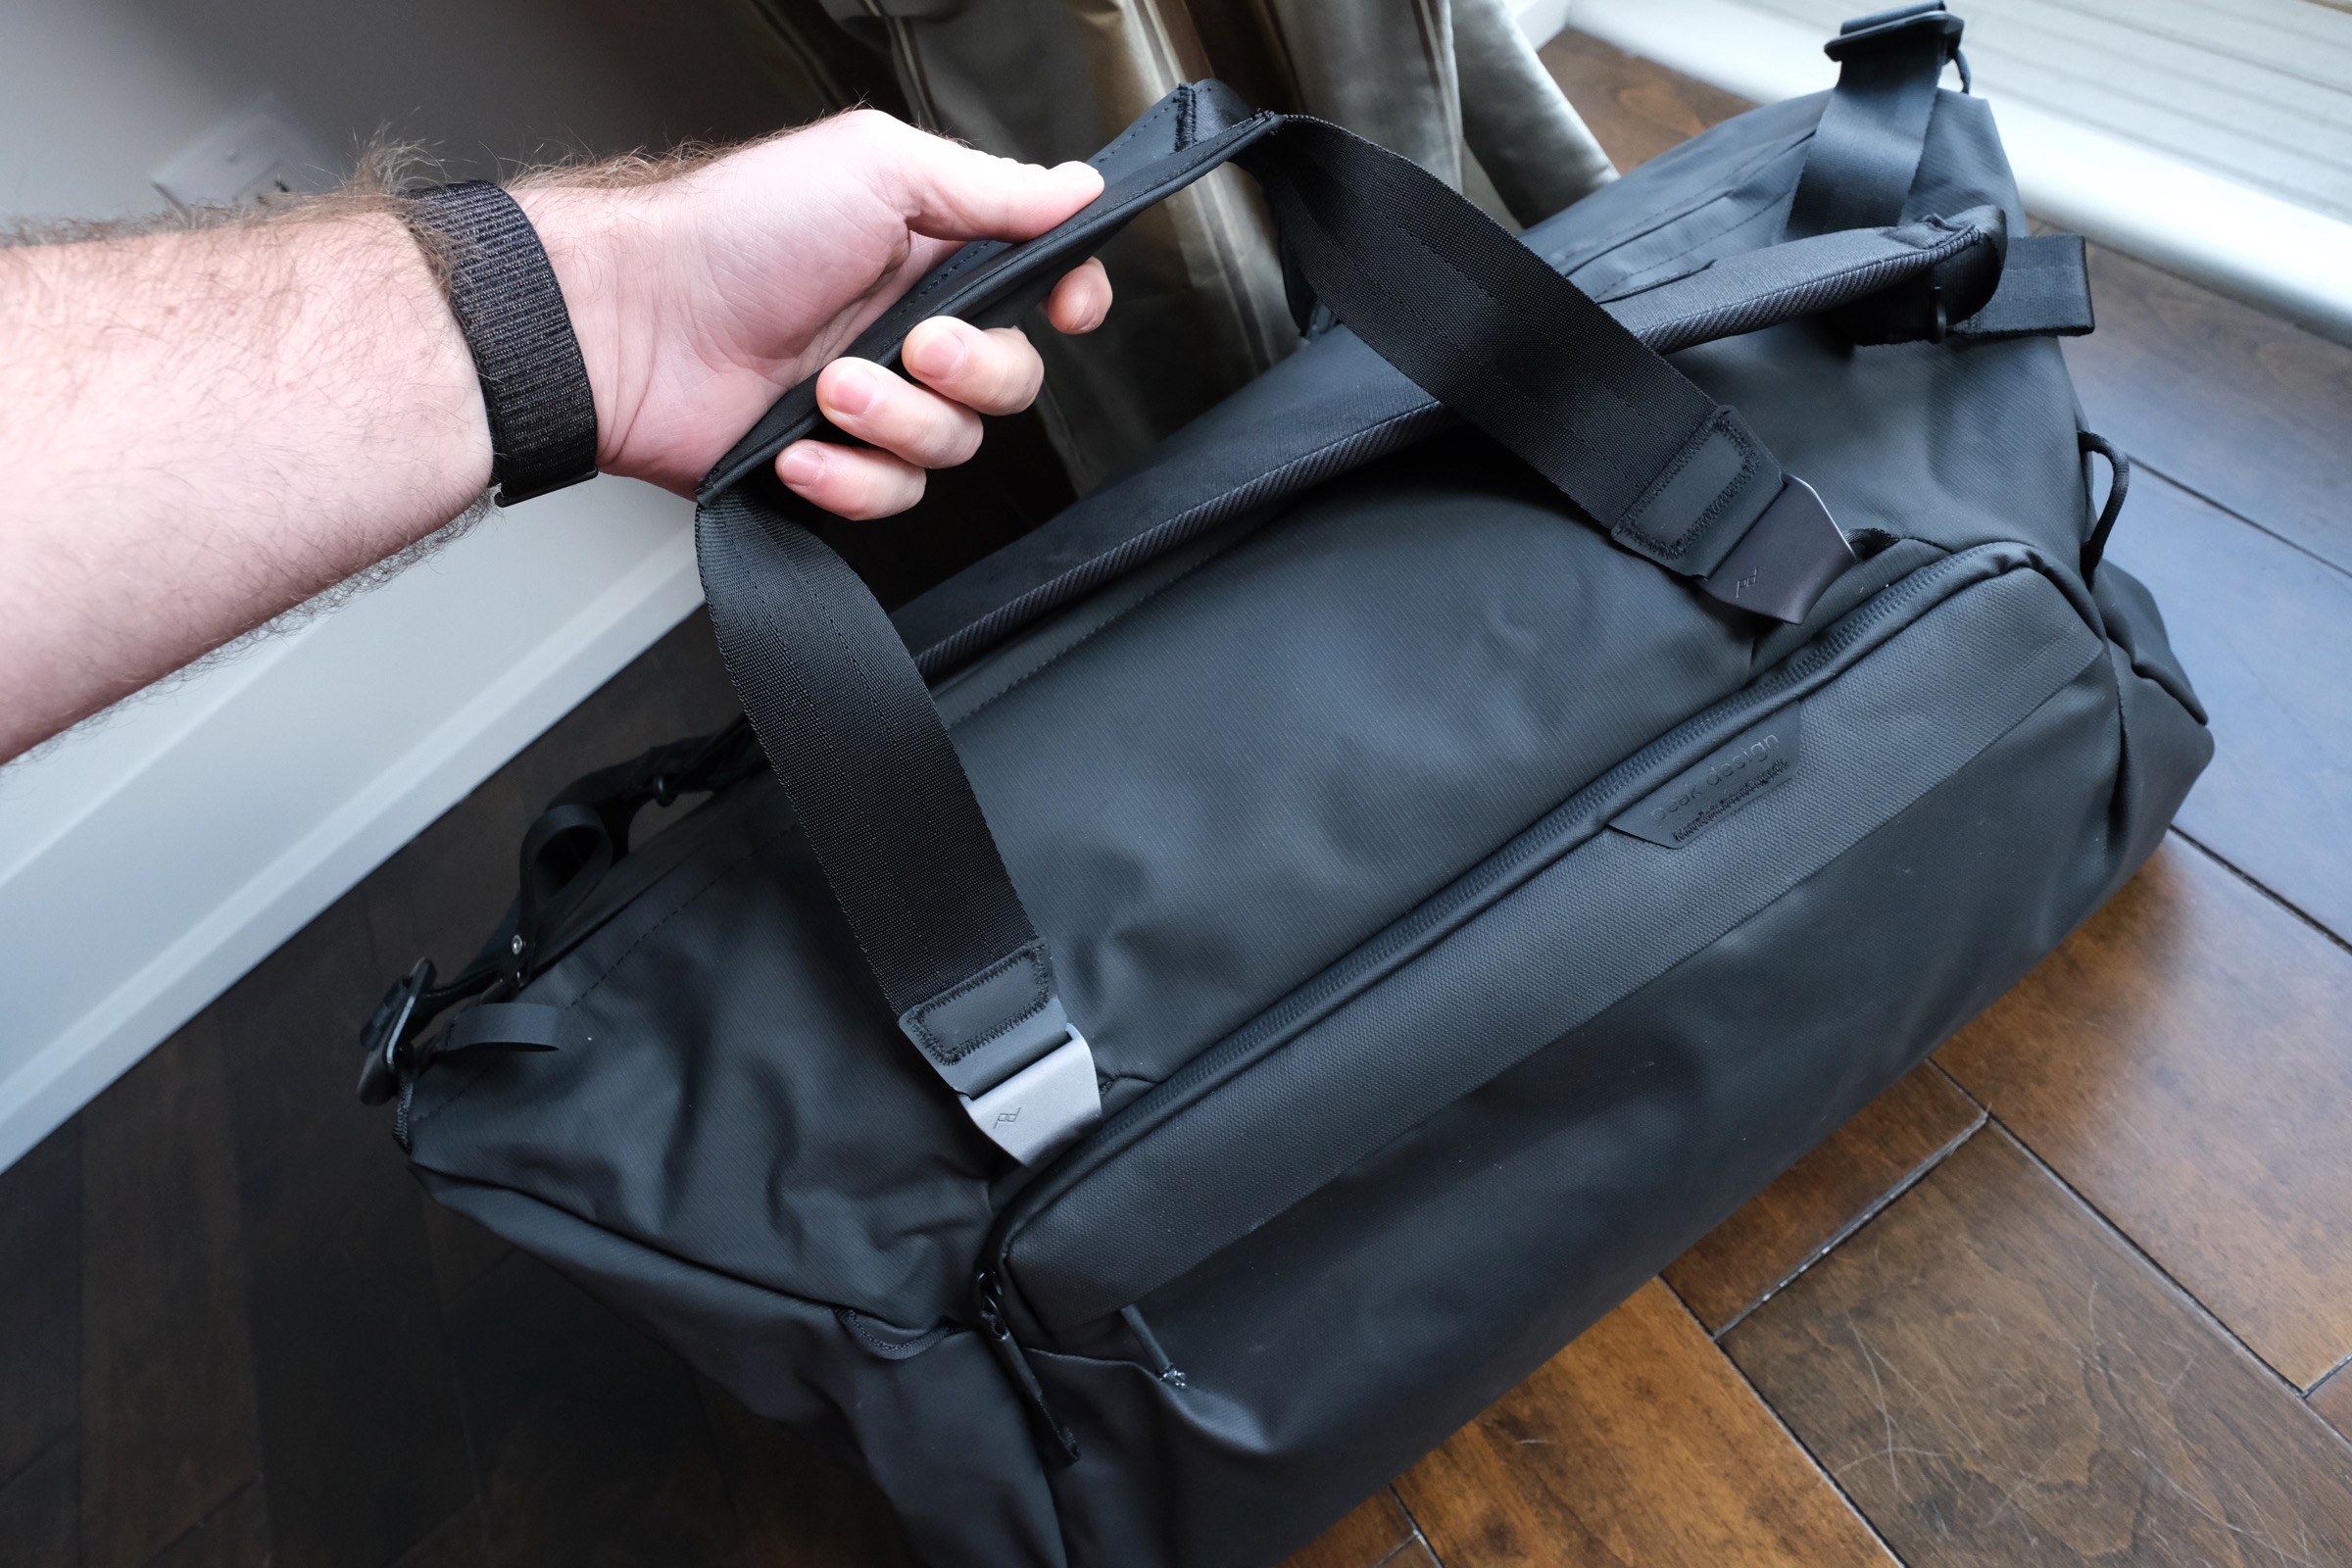 Travel Duffel Bags